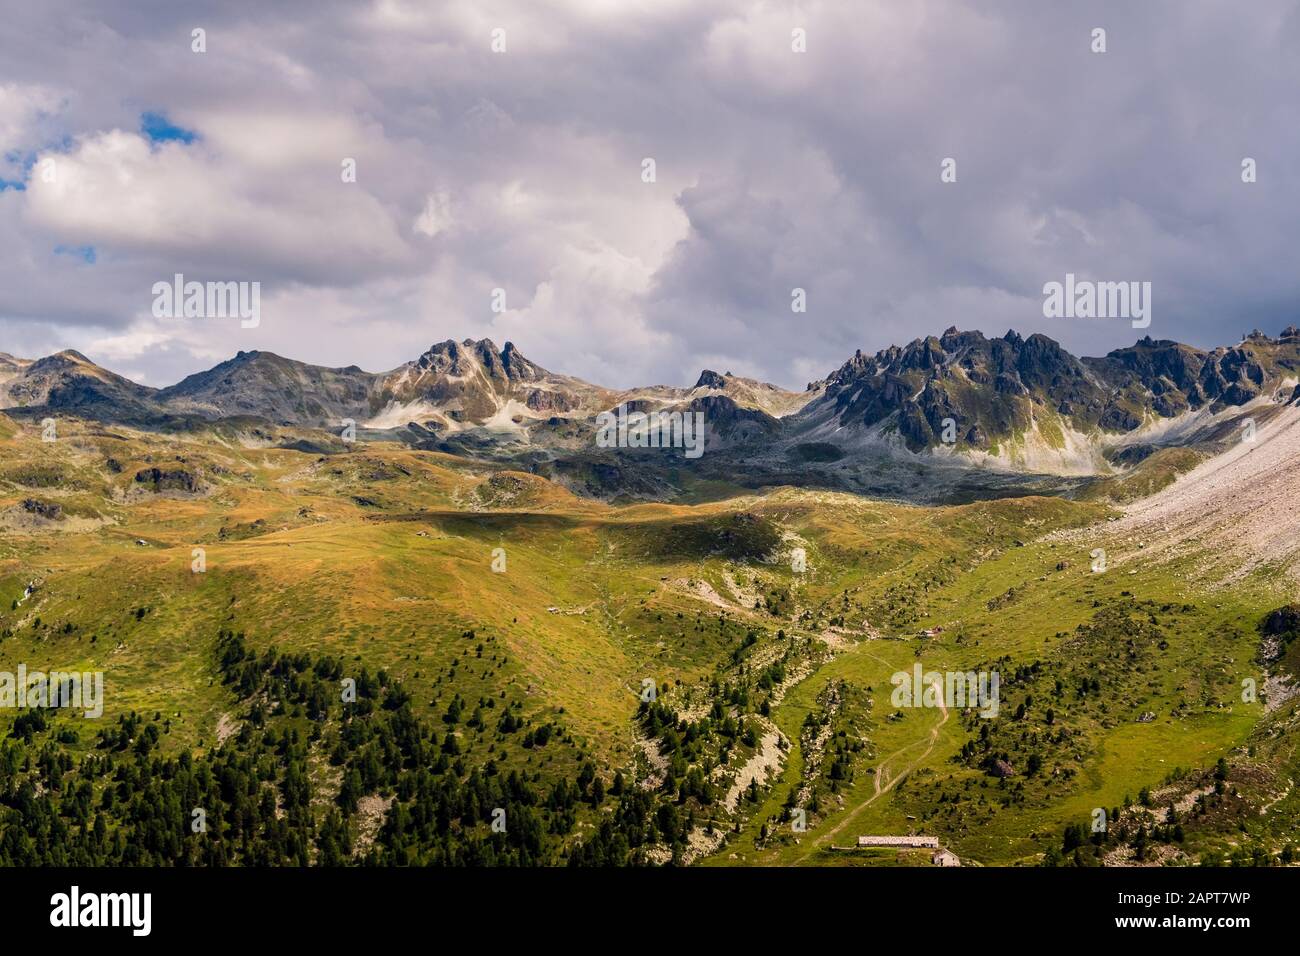 La formation de roches et les pâturages alpins se sont élevés dans les Alpes de Pennine au-dessus de Saint-Luc sous des nuages dramatiques en été. Anniviers, Valais, Suisse Banque D'Images